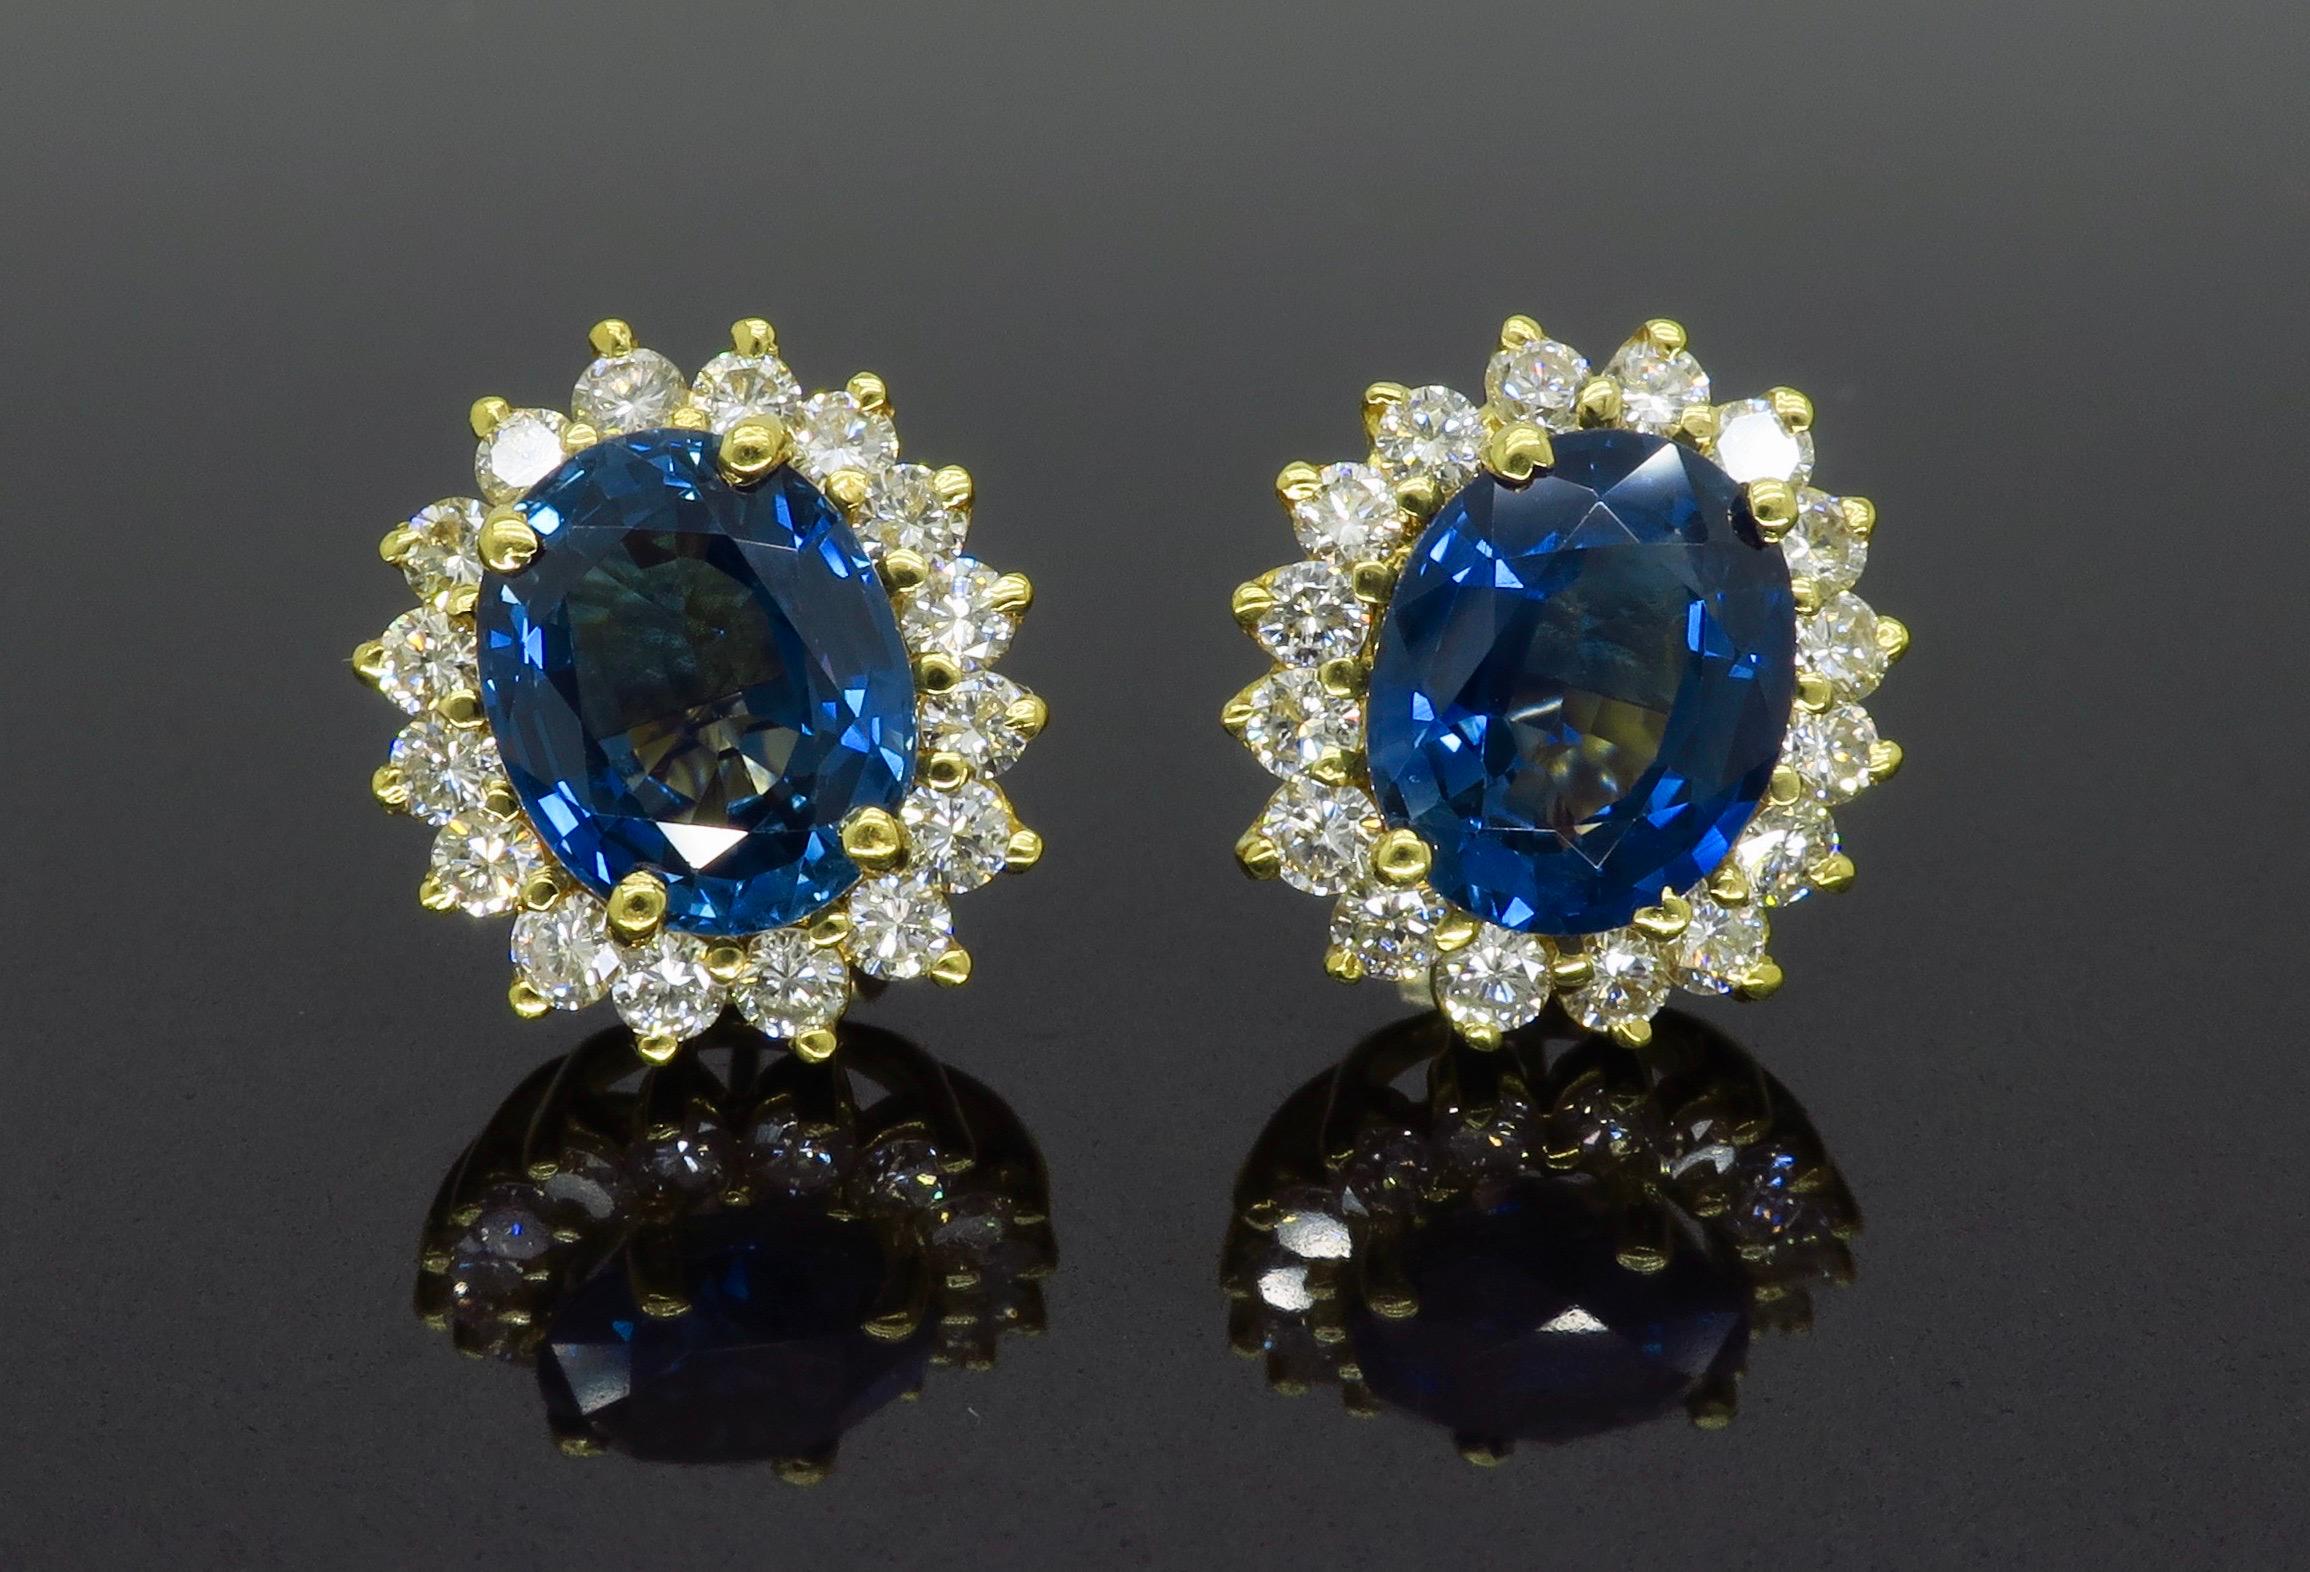 Boucles d'oreilles de style halo en or jaune ornées de saphirs bleus et de diamants ronds de taille brillant de 1,60CTW.

Pierre précieuse : Saphir bleu et diamant
Poids en carats de la pierre : Deux saphirs bleus d'environ 9,7x7,8 mm
Poids en